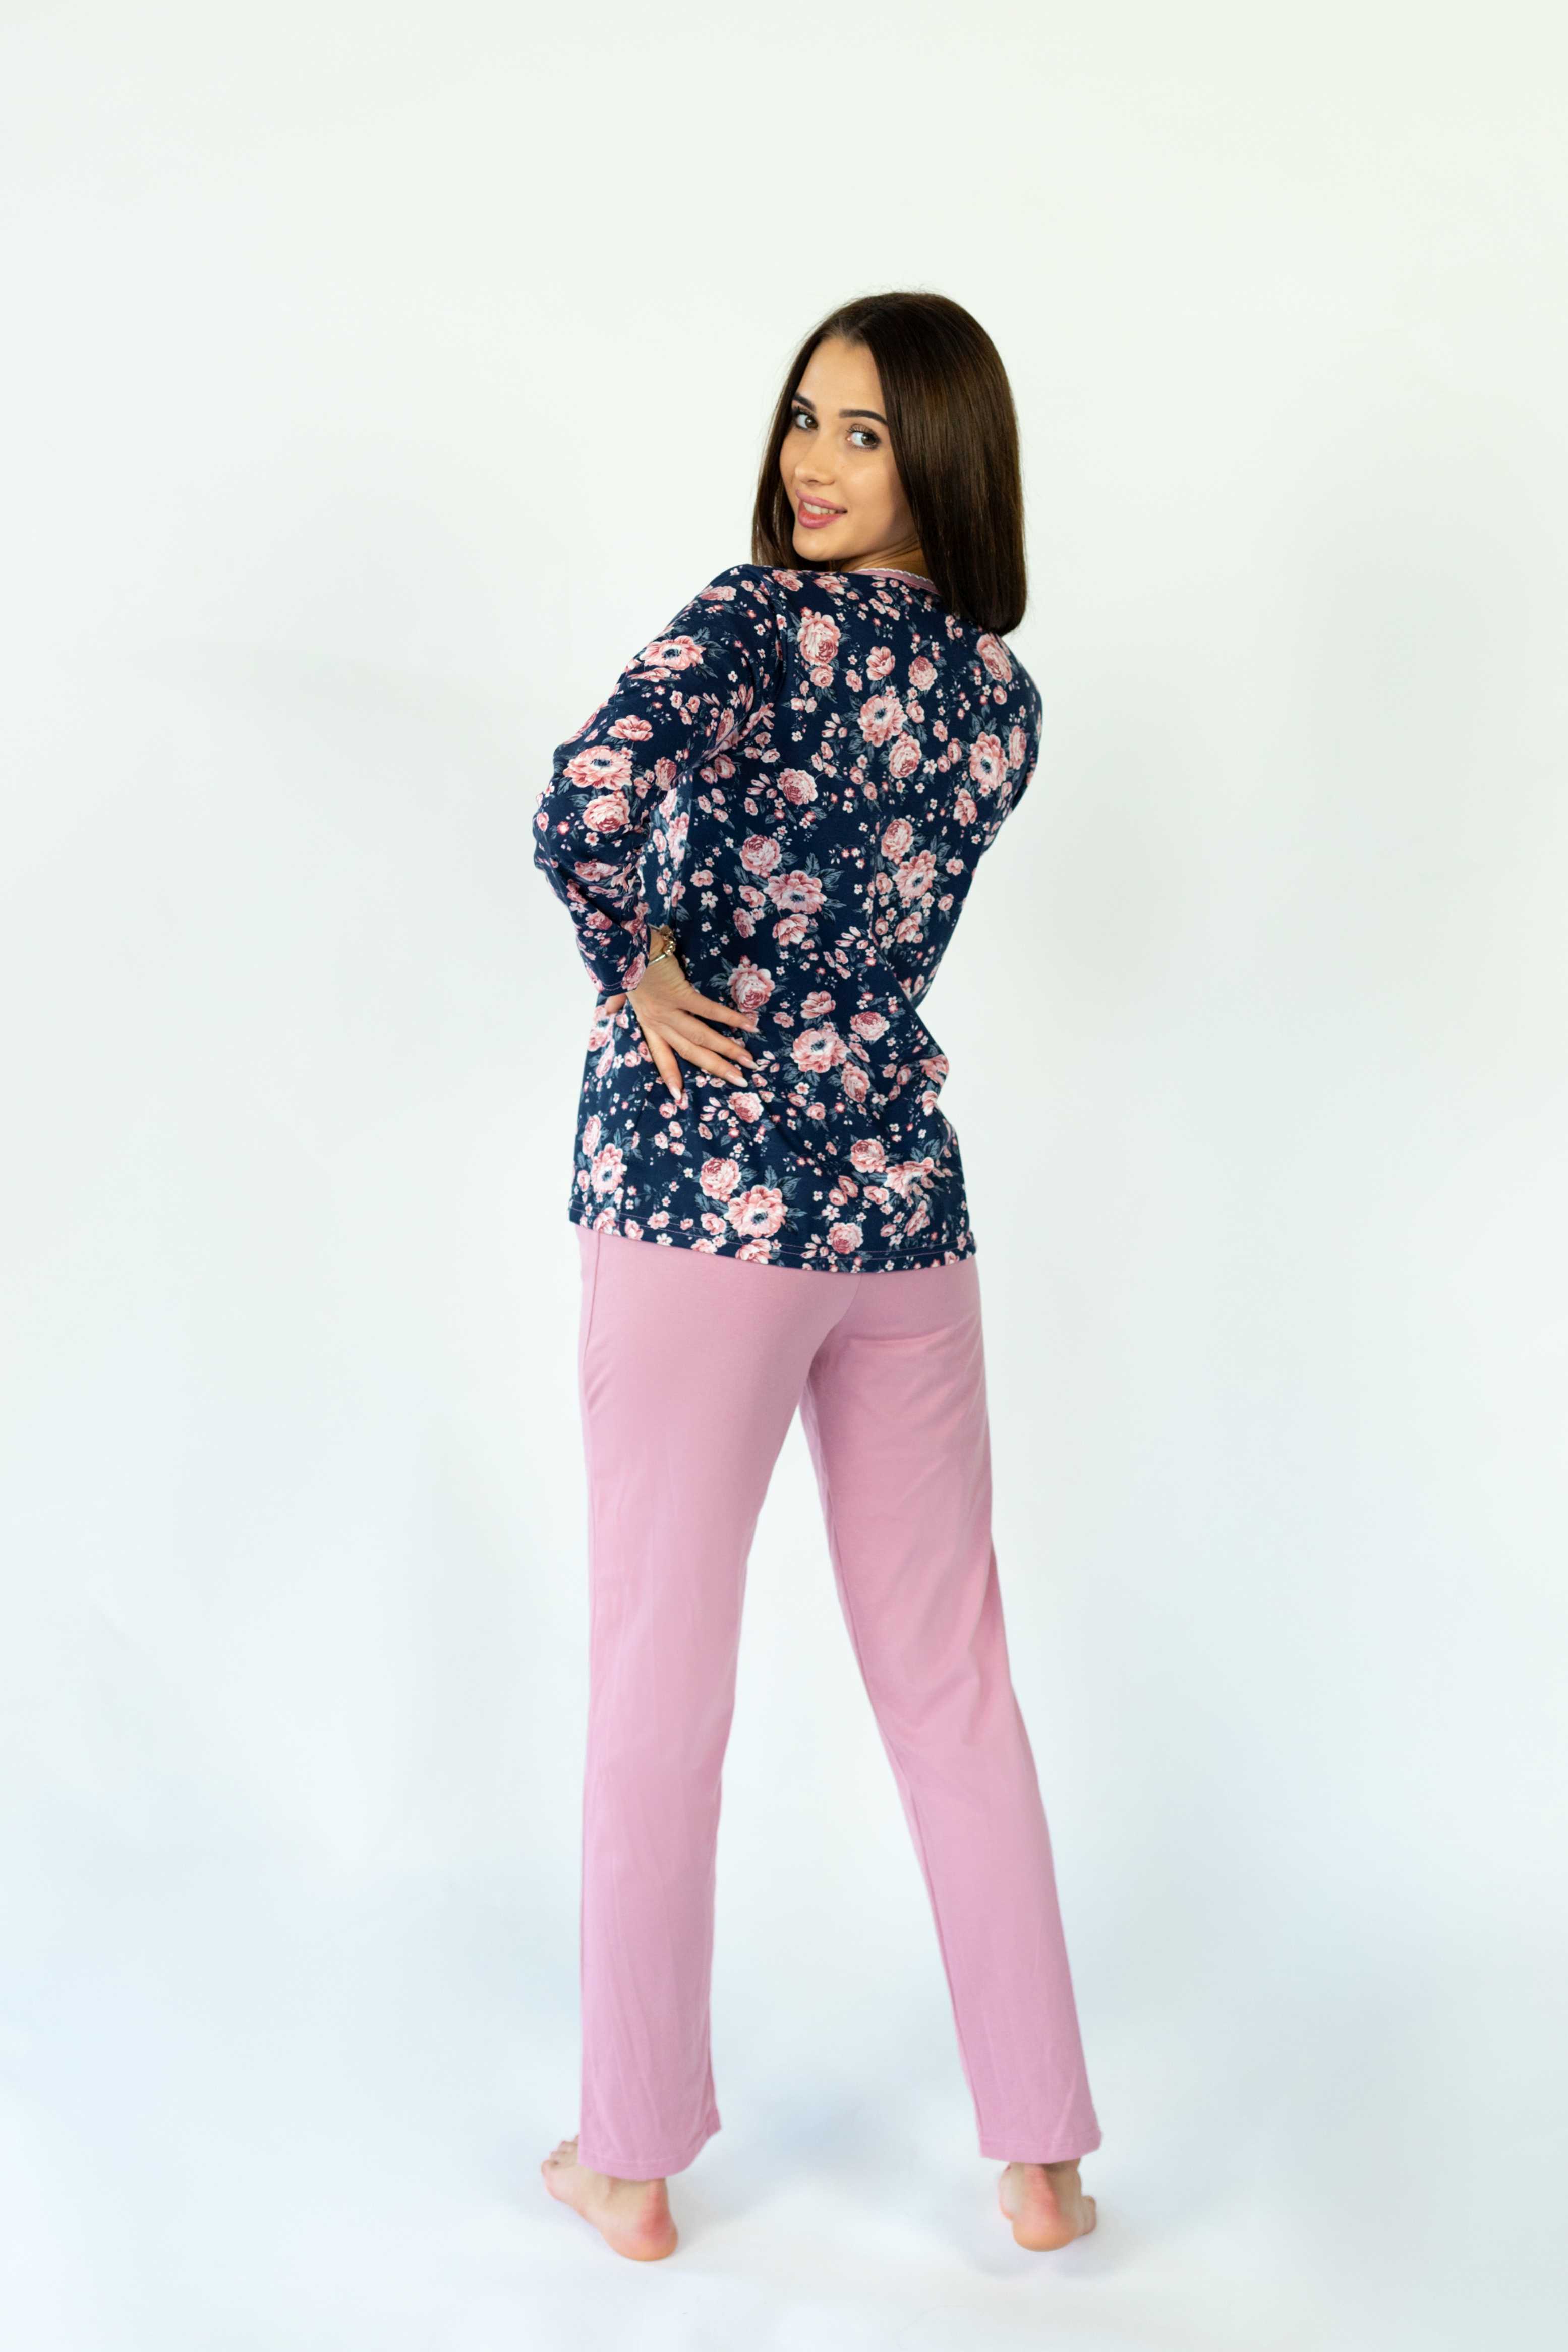 Piżama damska różowo-granatowa kwiaty